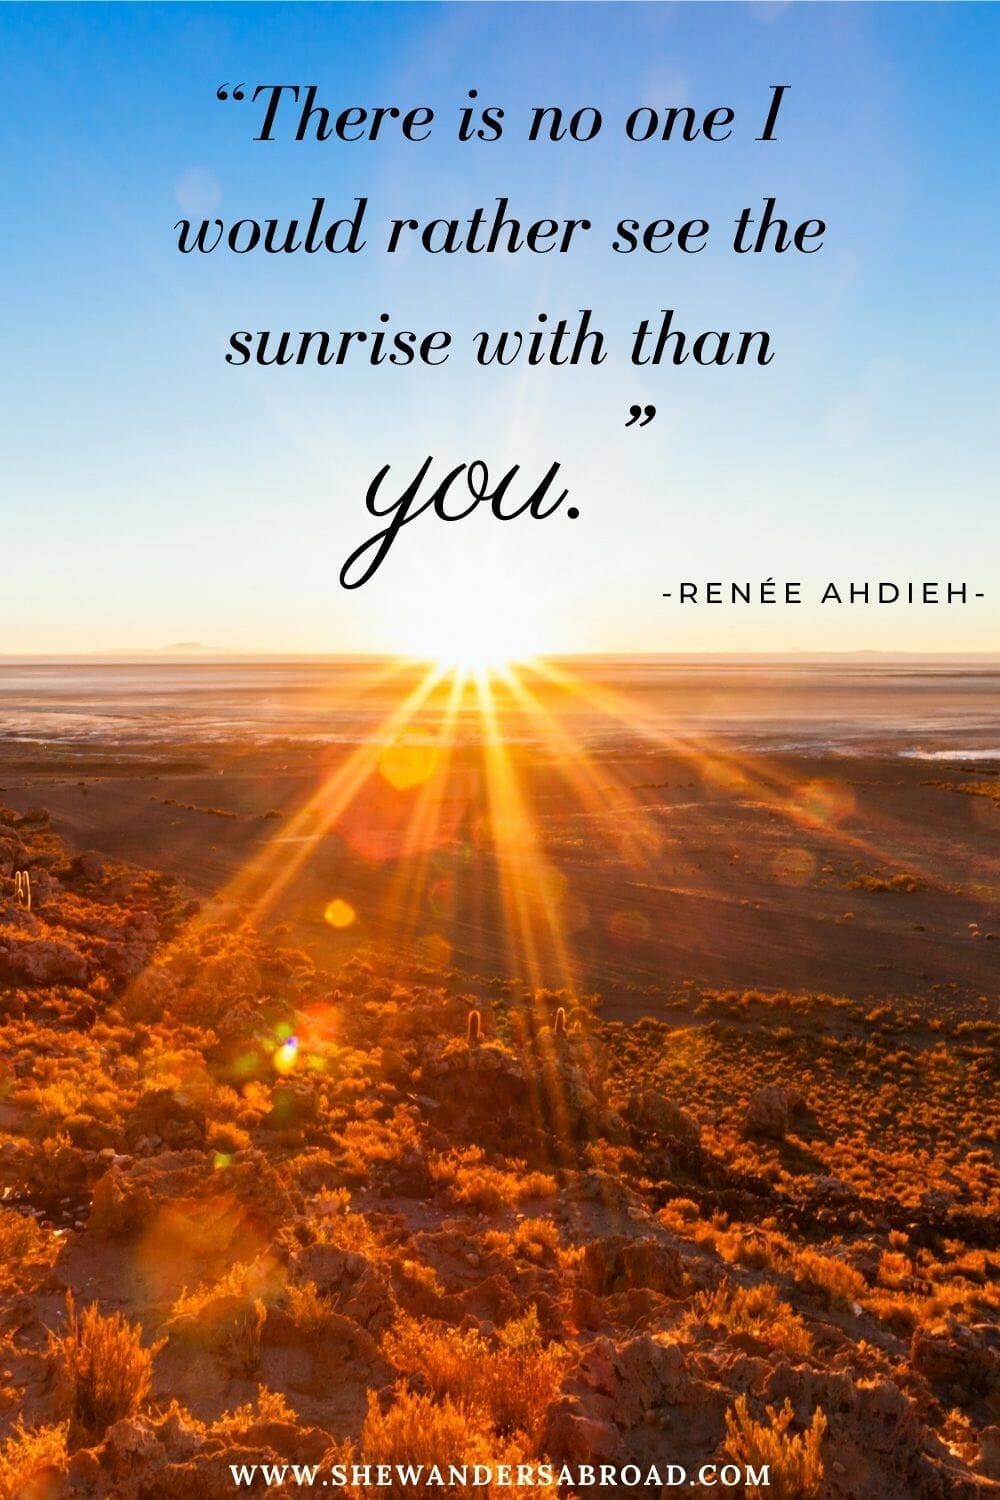 sunrise love quotes